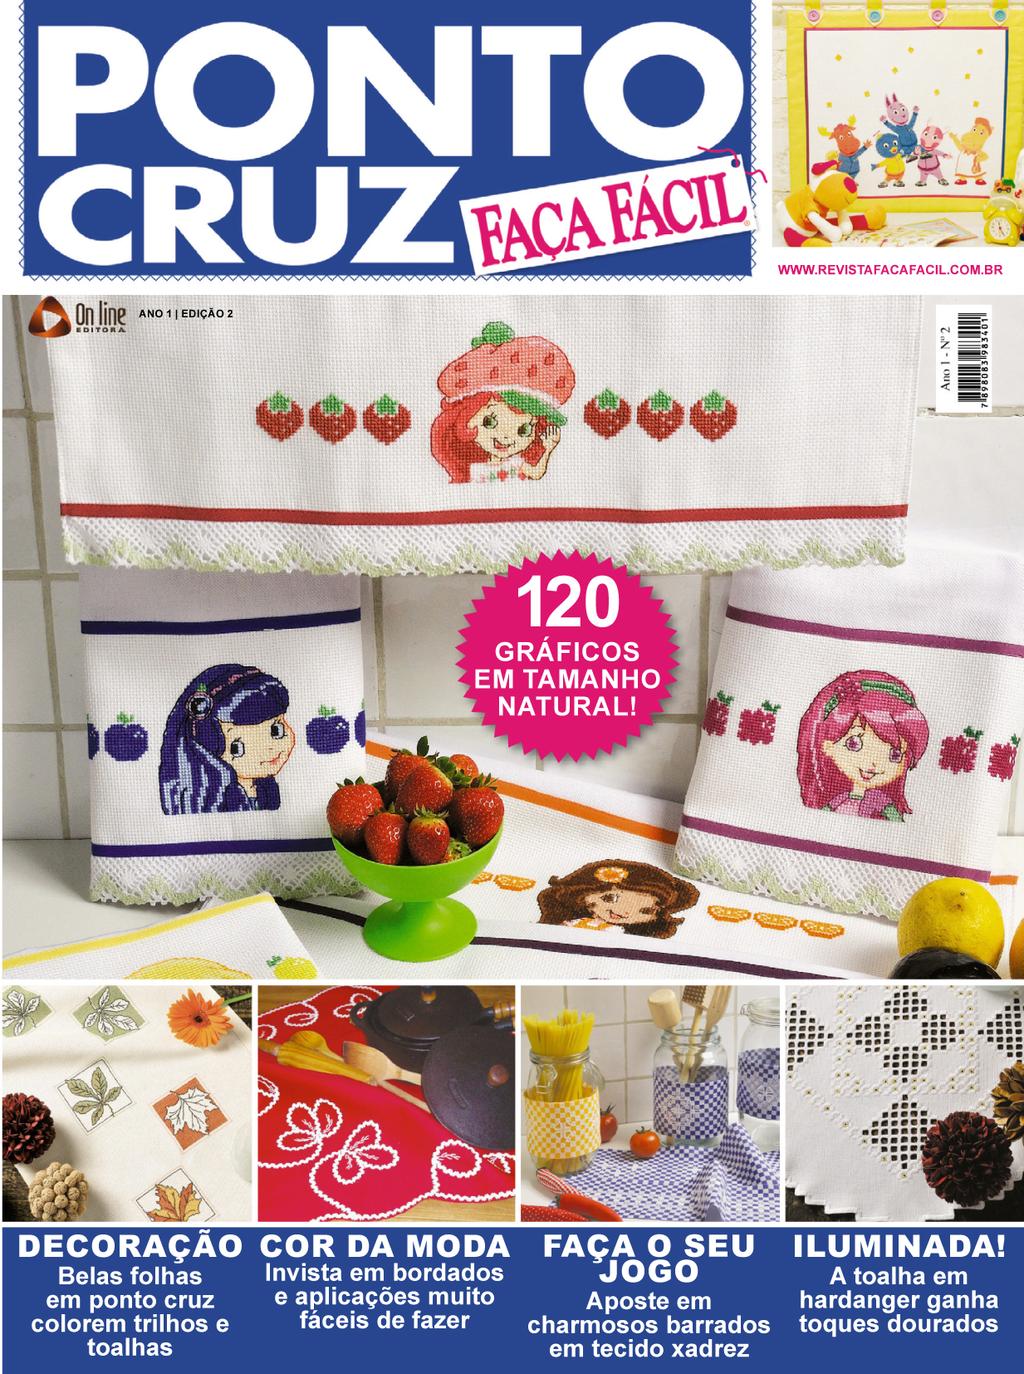 Faça Fácil Ponto Cruz Magazine Digital Subscription Discount 8658